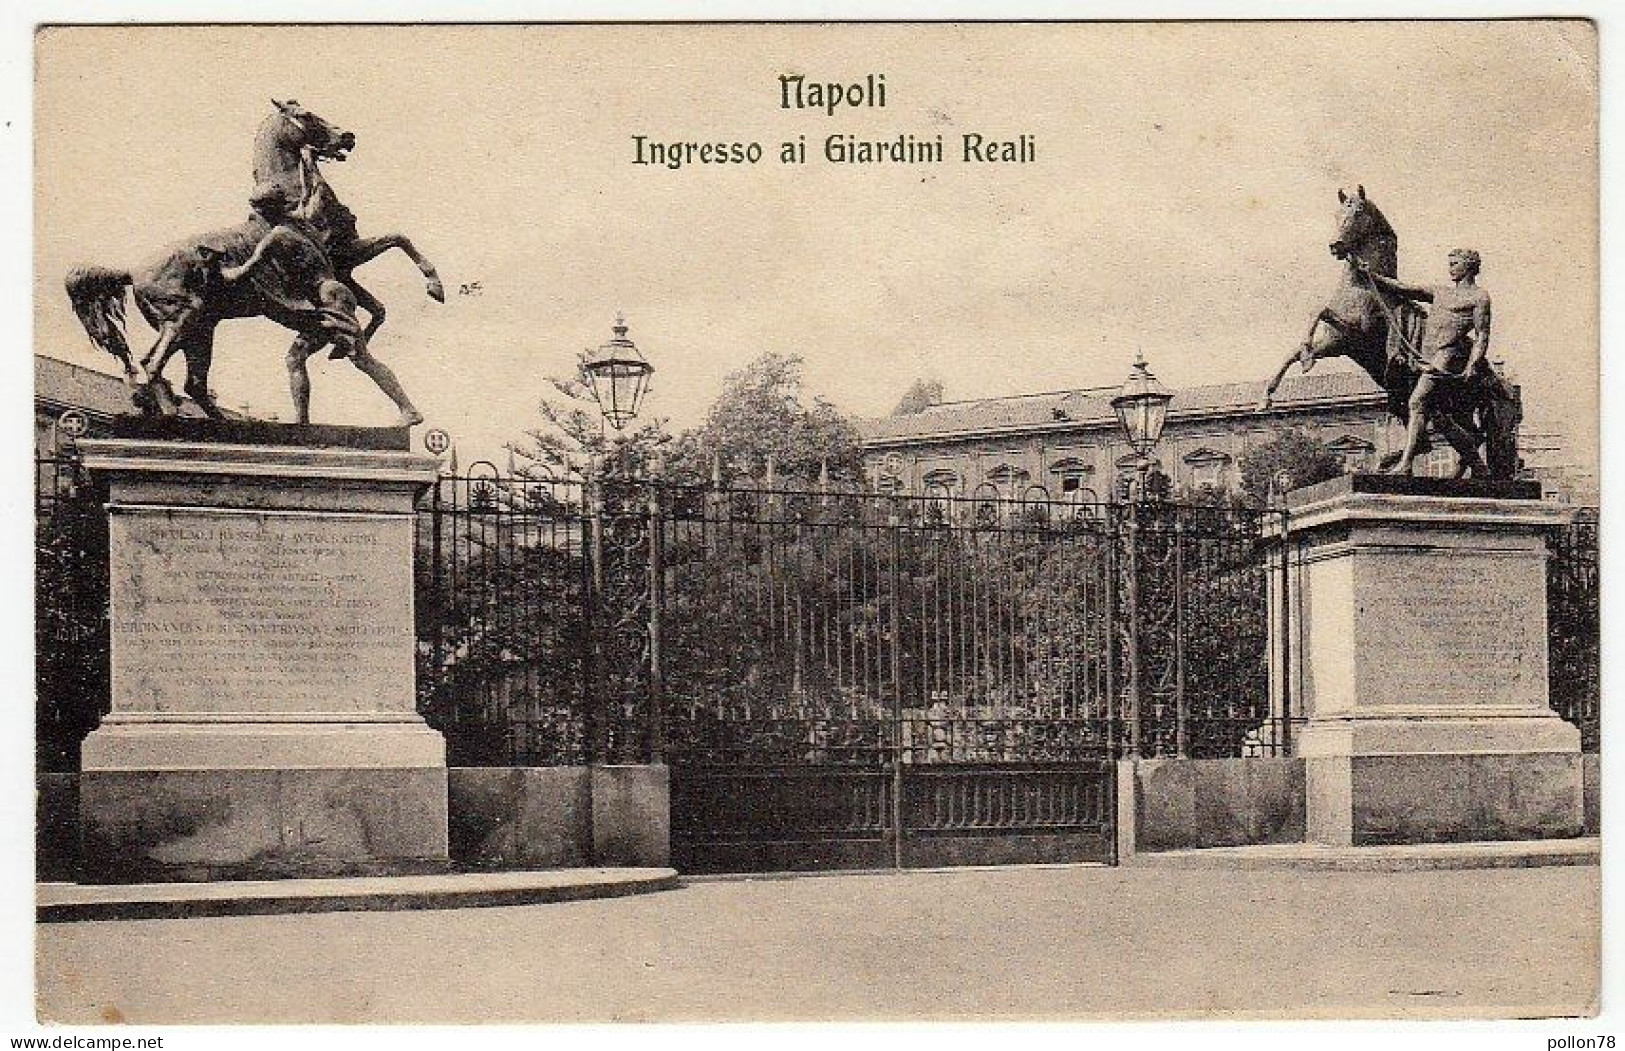 NAPOLI - INGRESSO GIARDINI REALI - 1912 - Vedi Retro - Formato Piccolo - Napoli (Naples)